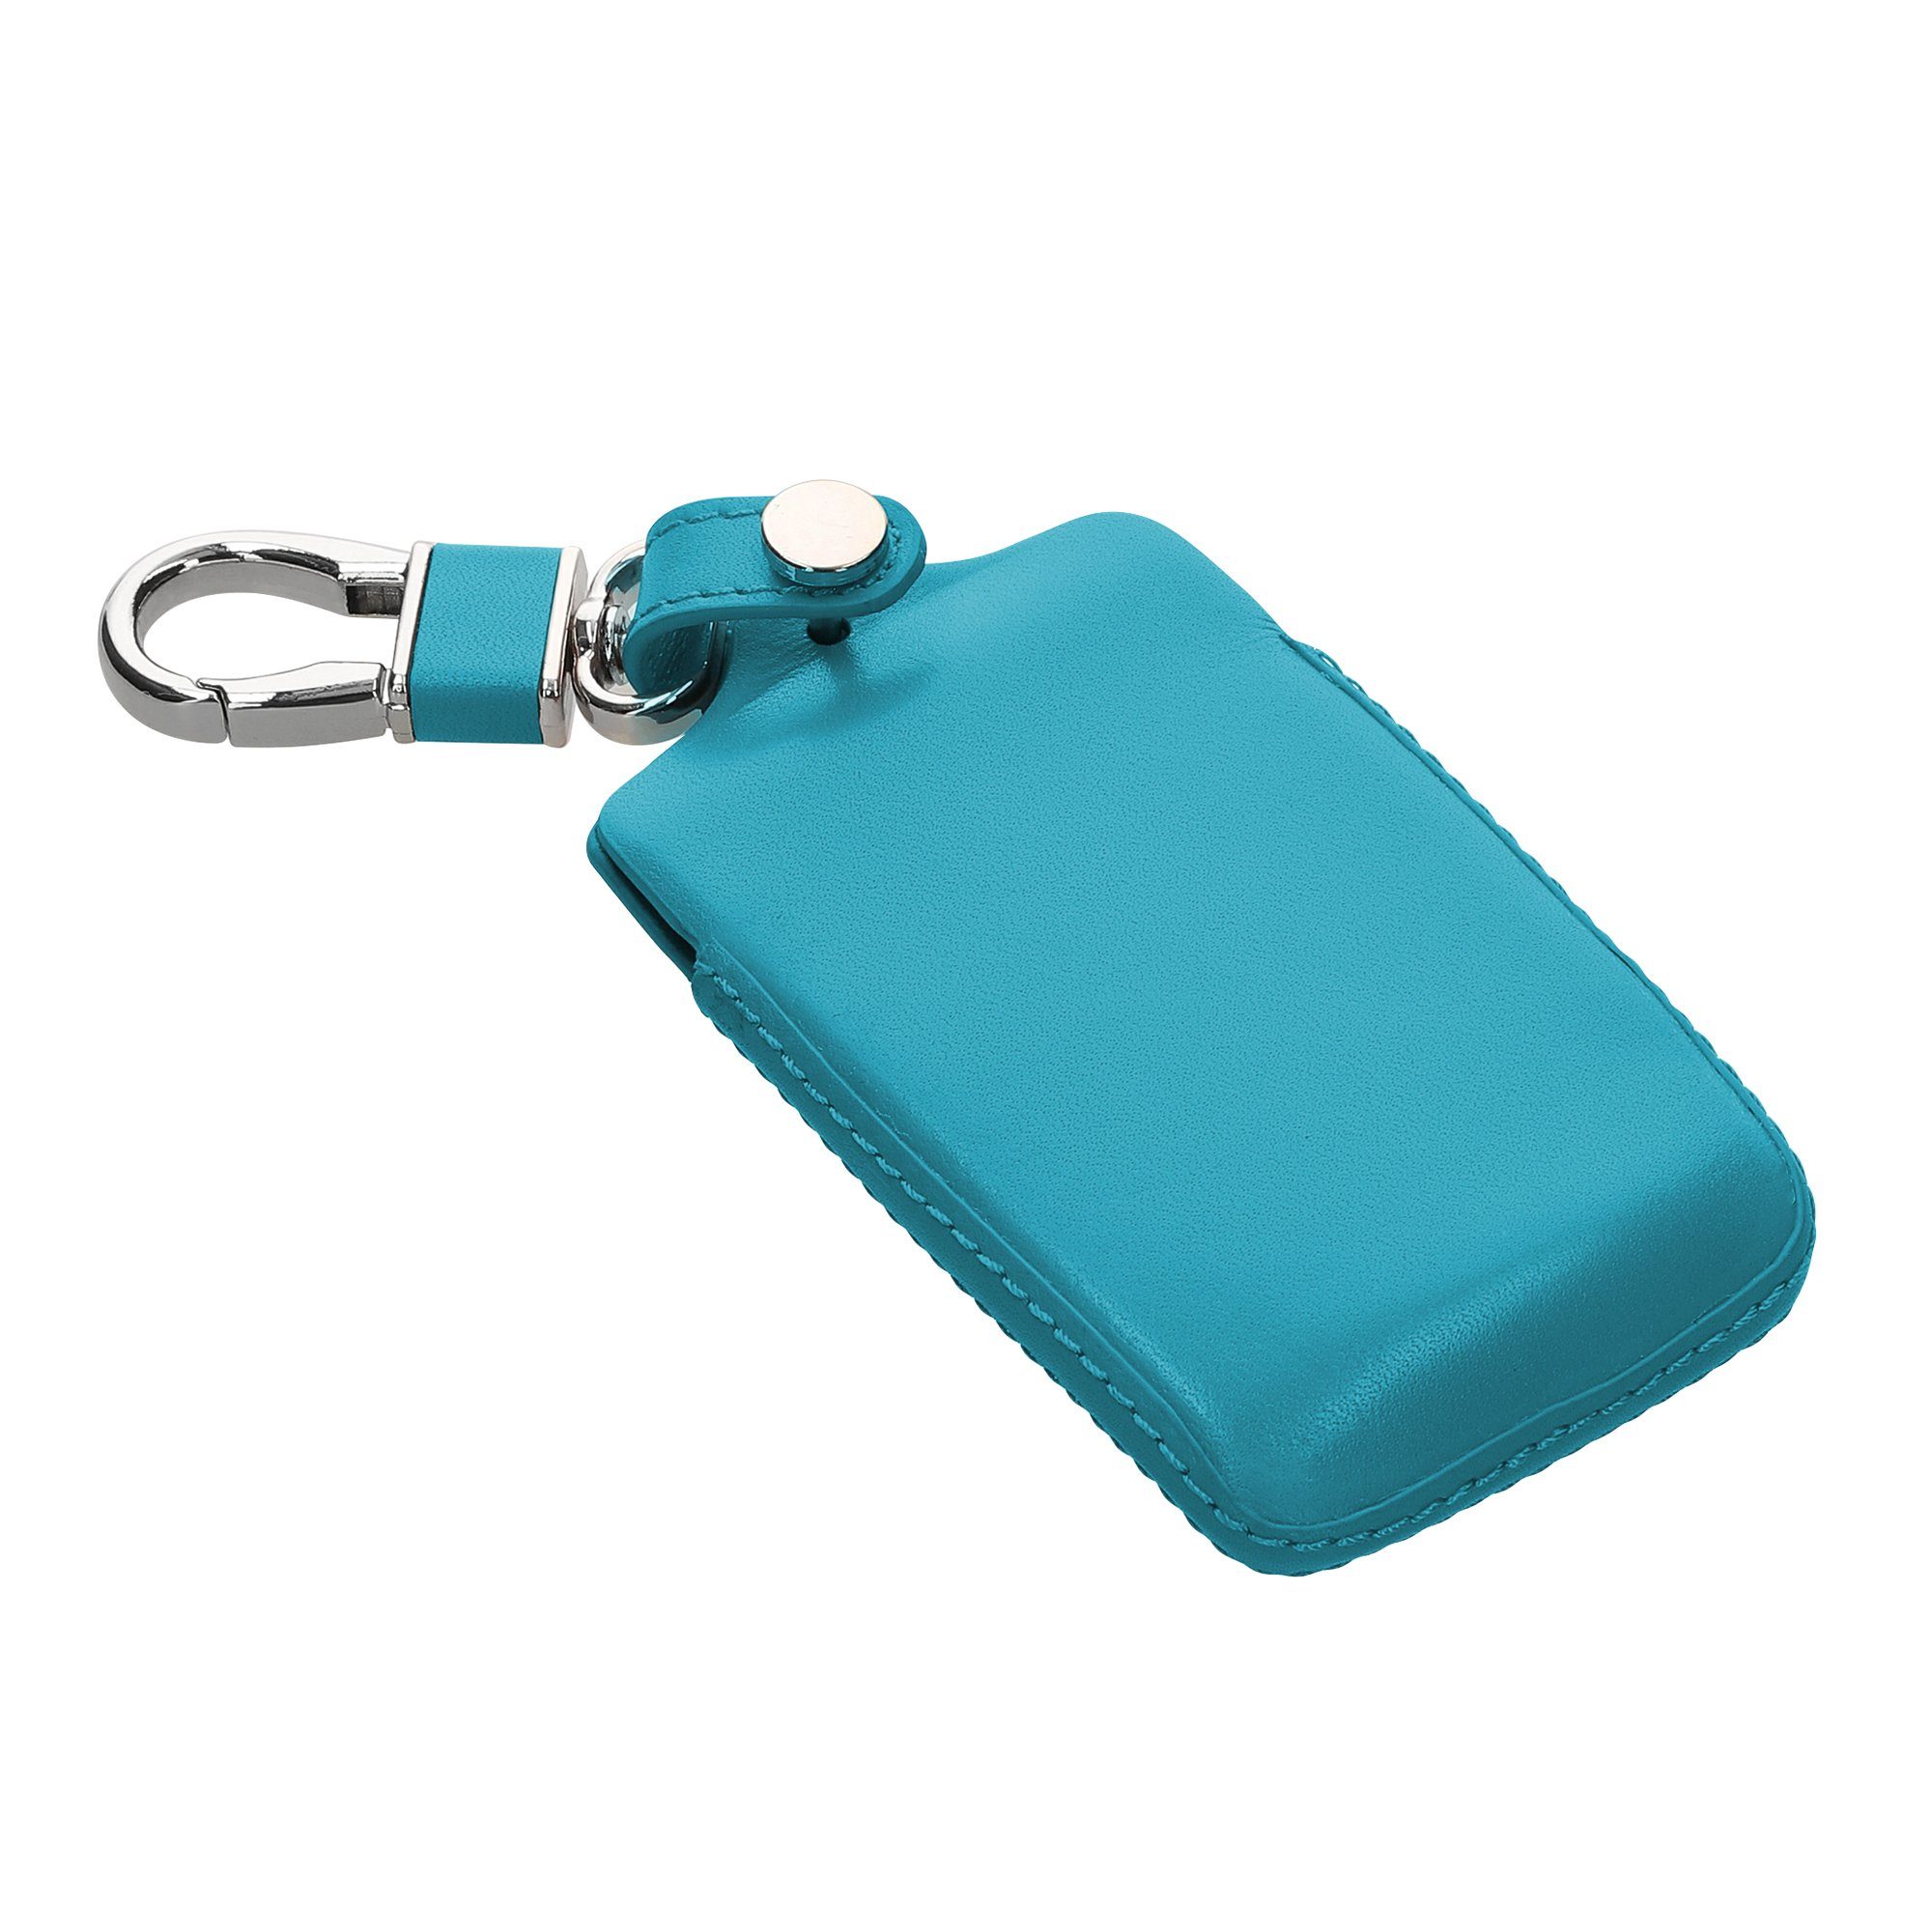 Schutzhülle Autoschlüssel Leder - Schlüsseltasche für Schlüssel kwmobile Cover Hülle Renault, Schlüsselhülle Case